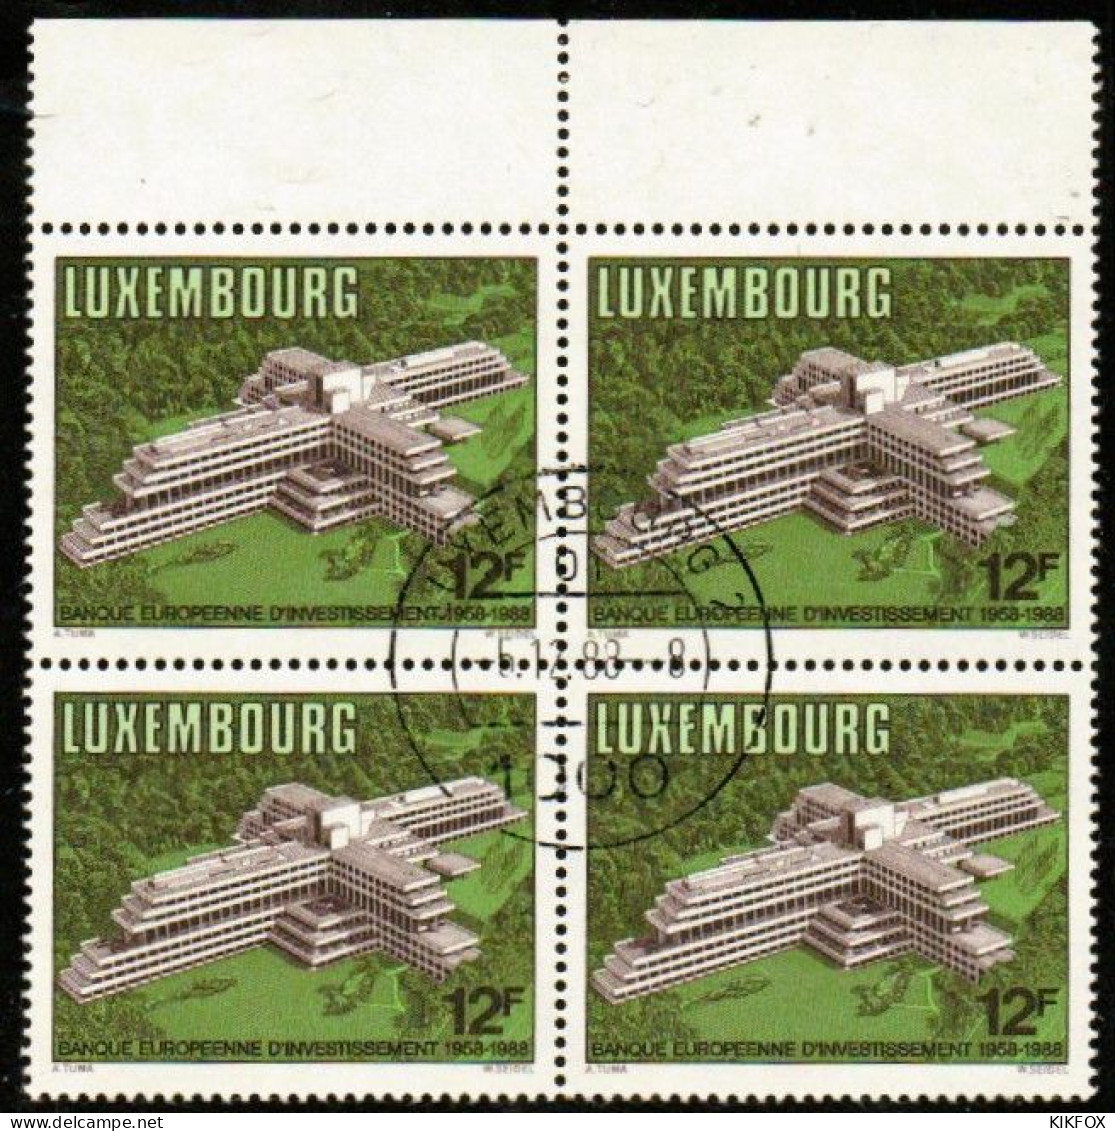 Luxembourg, Luxemburg,1988, MI 1208,YV 1158, VIERERBLOCK,30 JAHRE EUROPÄISCHE INVESTITIONSBANK (EIB),GESTEMPELT,OBLITERE - Usati